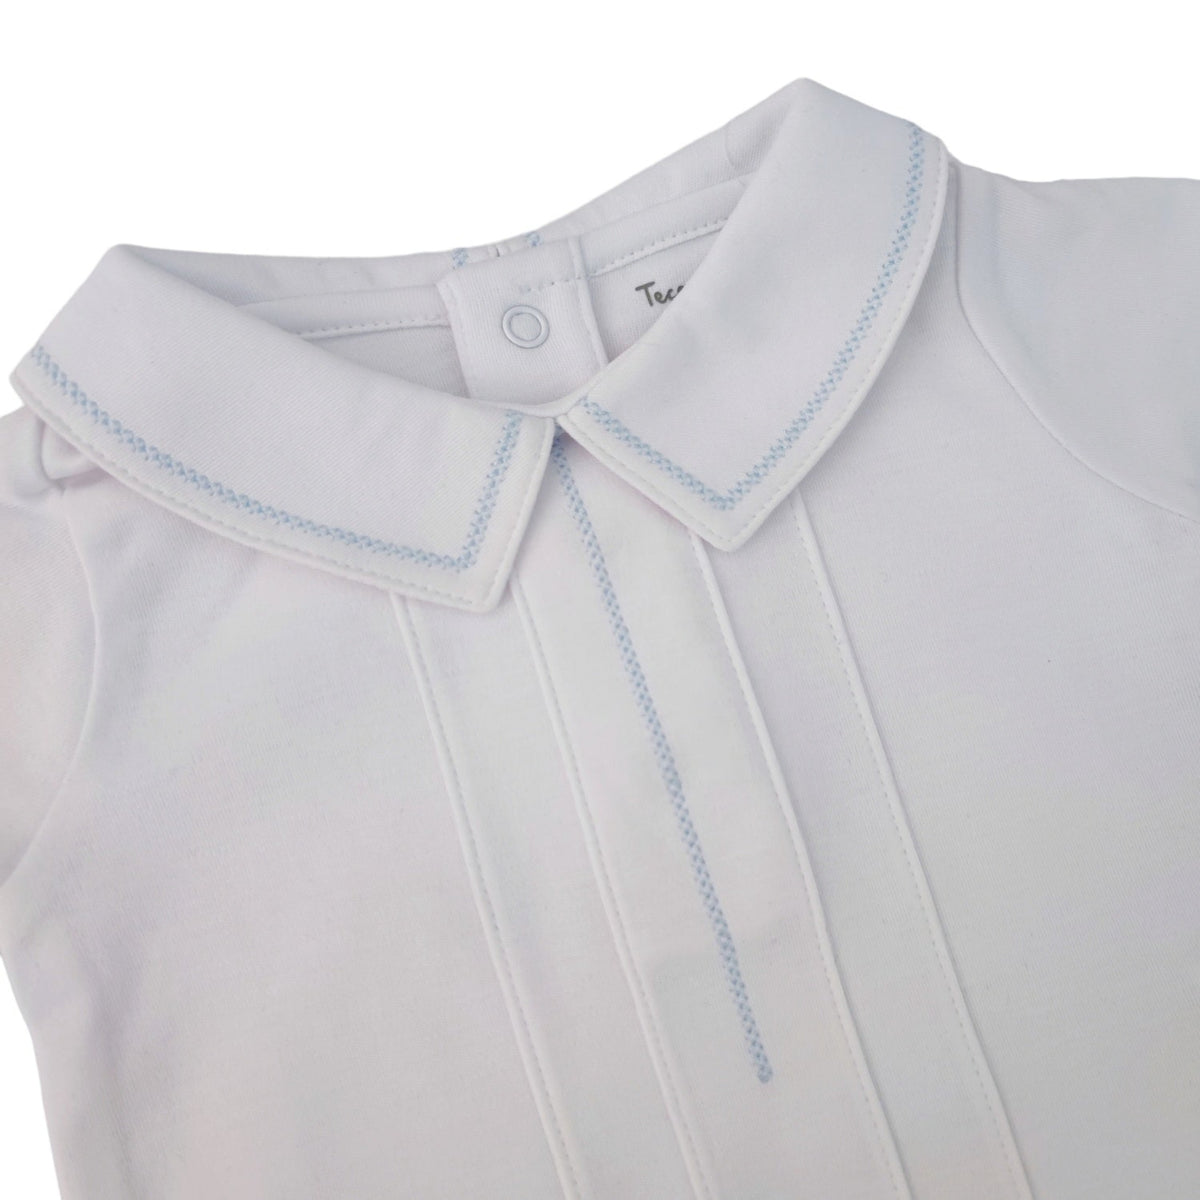 Joseph Bodysuit Short Sleeve - White & Light Blue